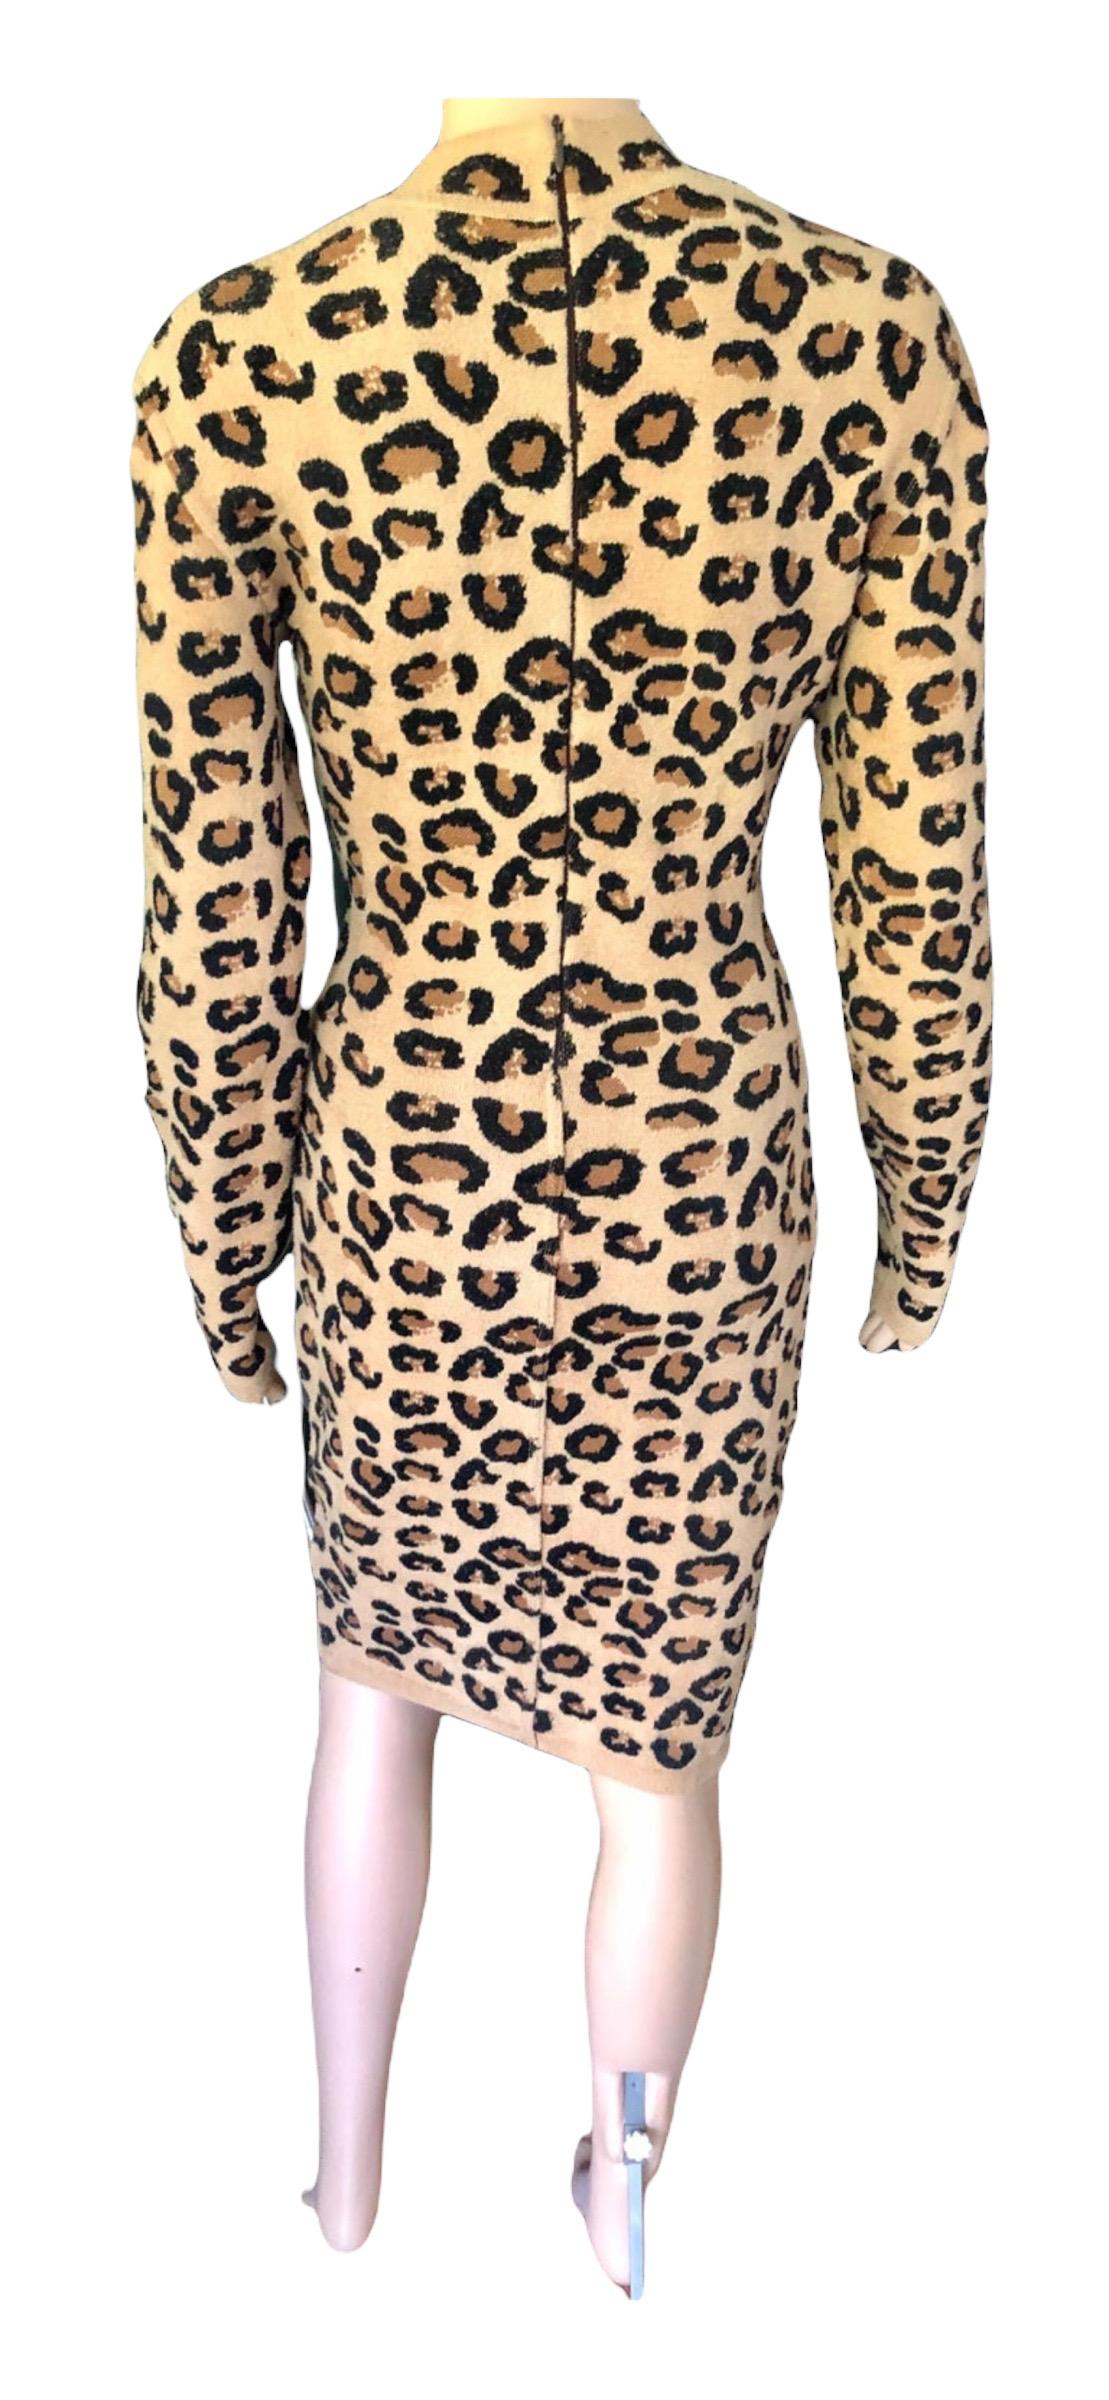 Azzedine Alaia F/W 1991 Runway Vintage Iconic Leopard Print Bodycon Dress For Sale 4